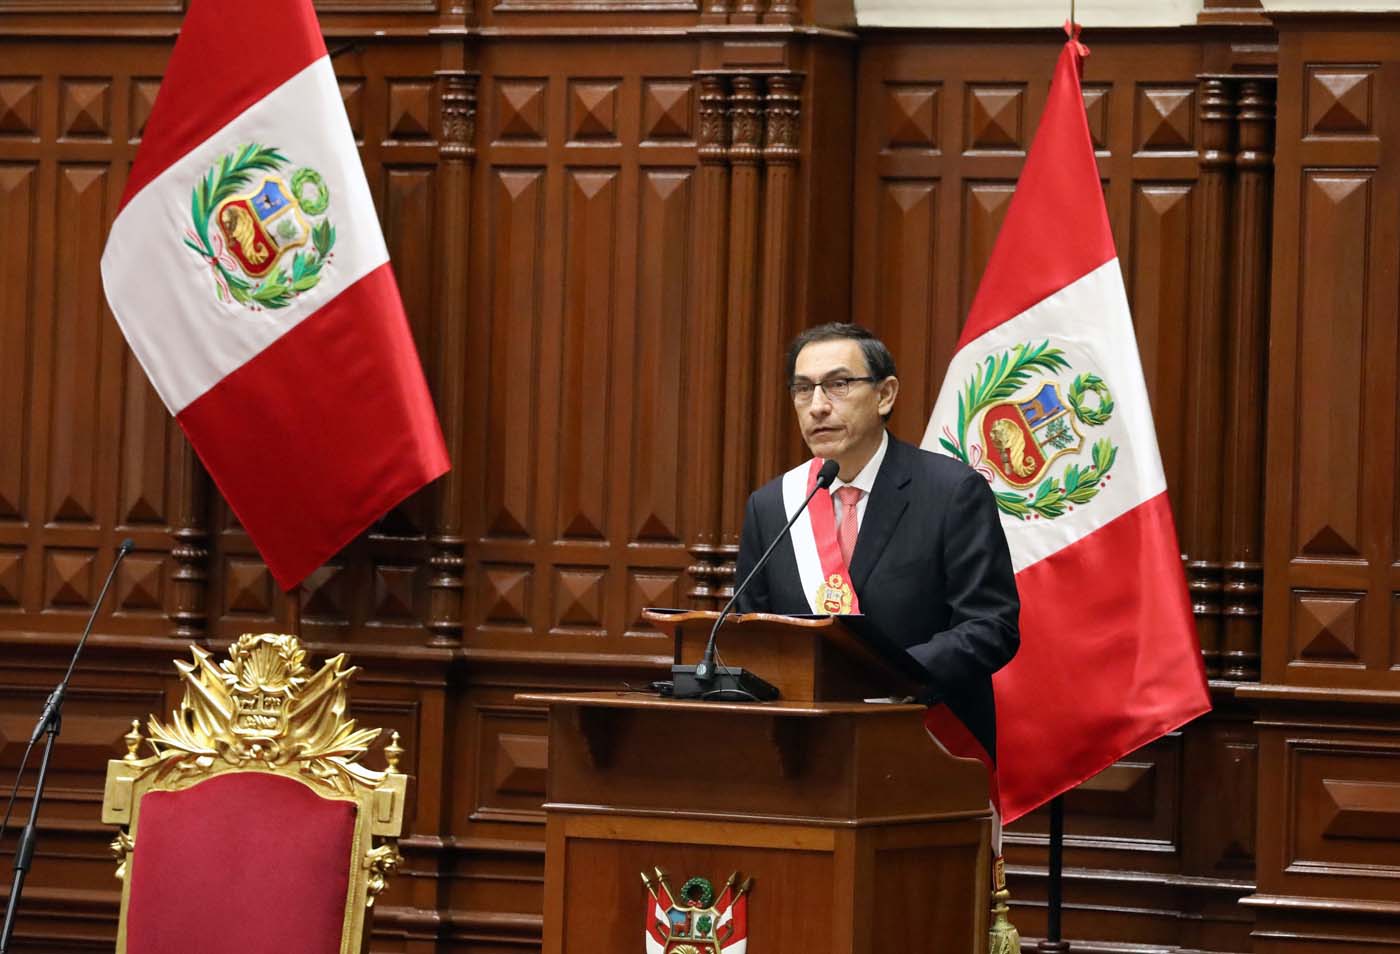 Nuevo presidente de Perú despide a ministro investigado tras polémicos videos